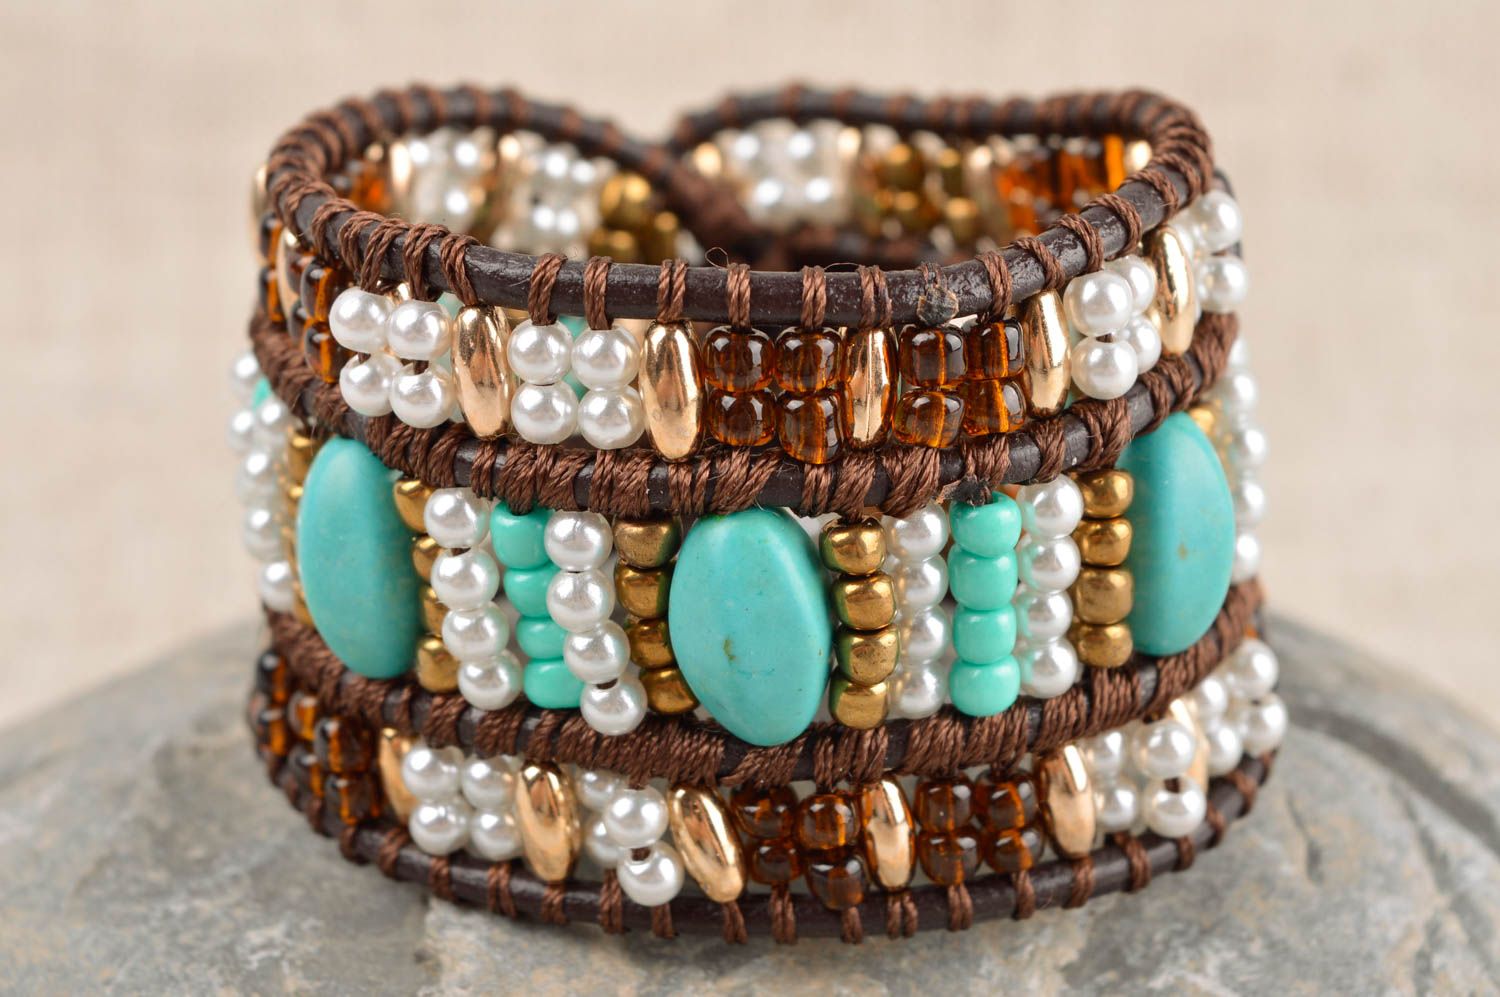 Handmade bracelet unusual bracelet designer jewelry for women gift for her photo 1